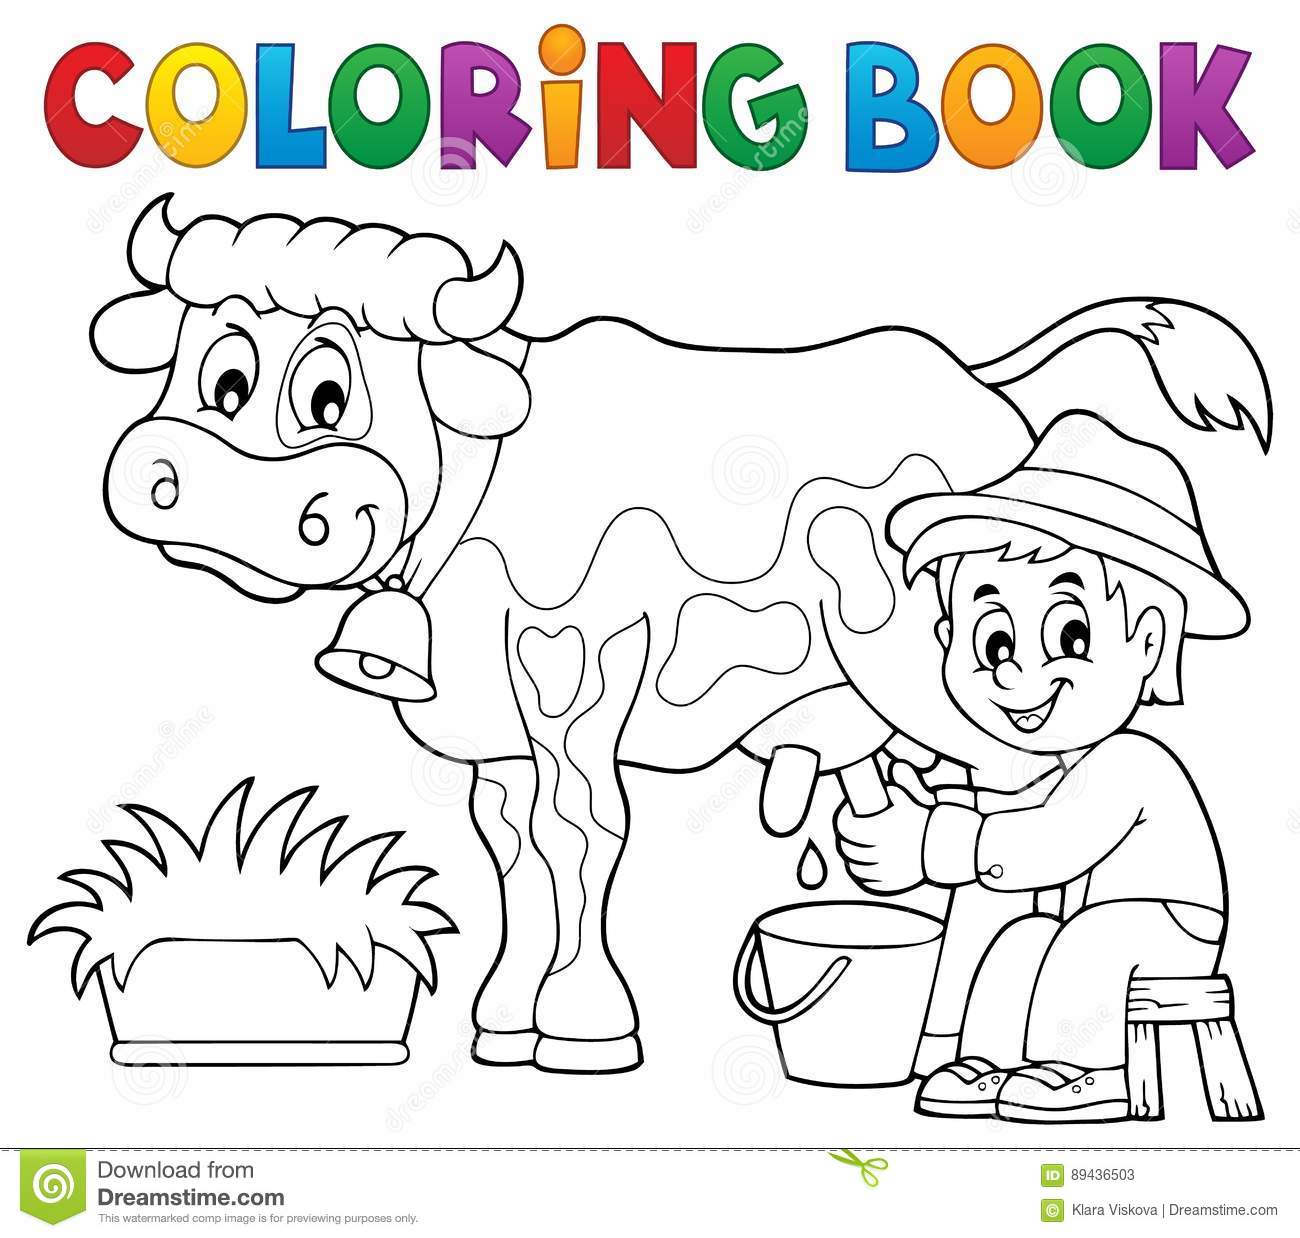  раскраски для детей на тему фермер          раскраски для детей и взрослых на тему фермер.  Интересные раскраски на тему фермер, мельница, огород. Раскраски в фермером                